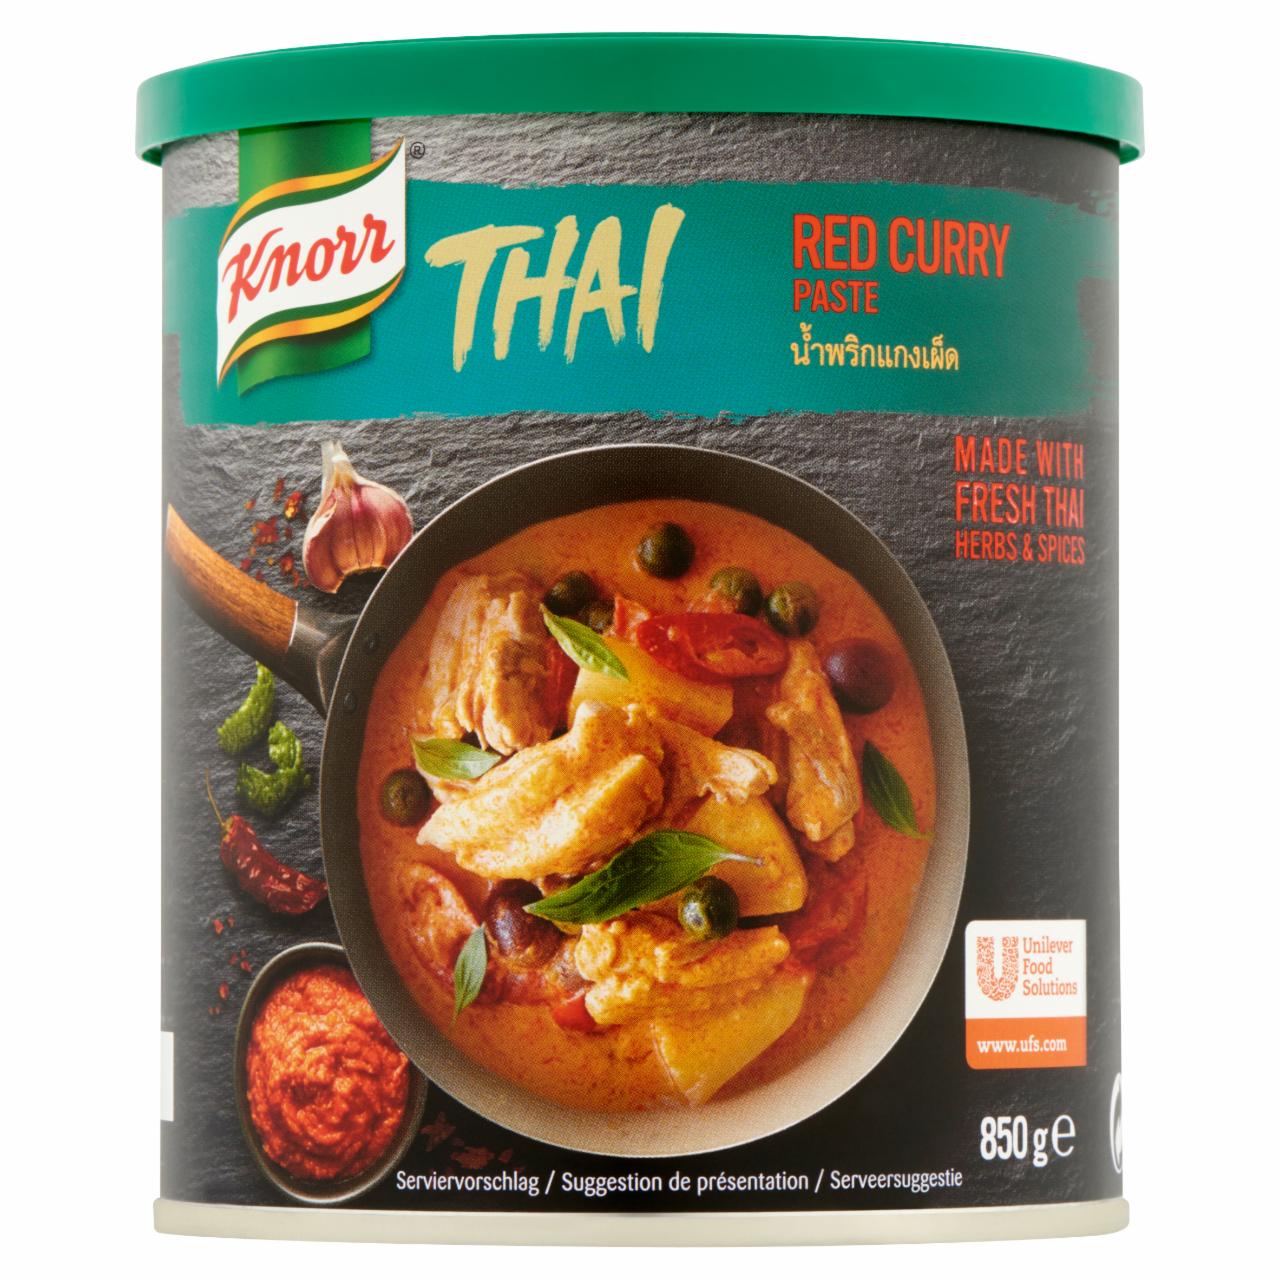 Képek - Knorr thai vörös curry paszta 850 g